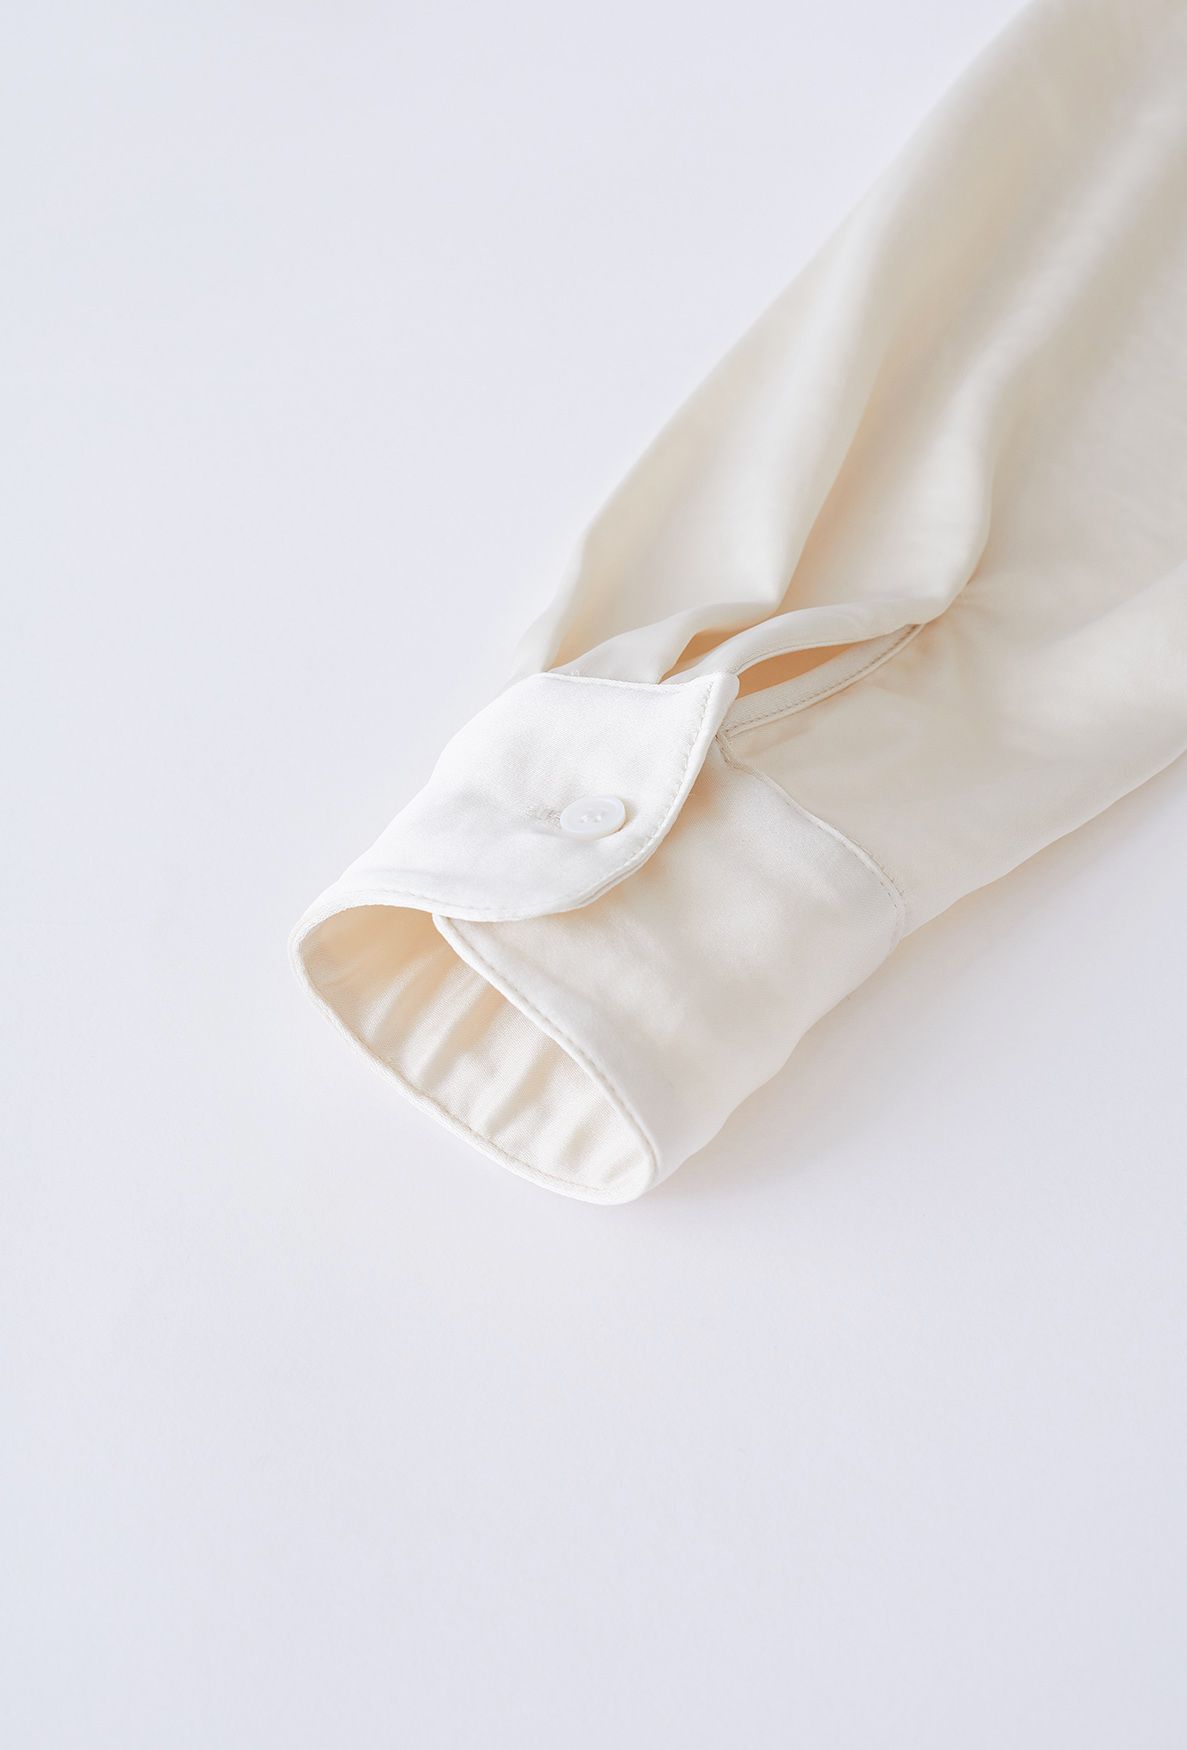 Camisa corta de satén con bolsillos retorcidos en color crema